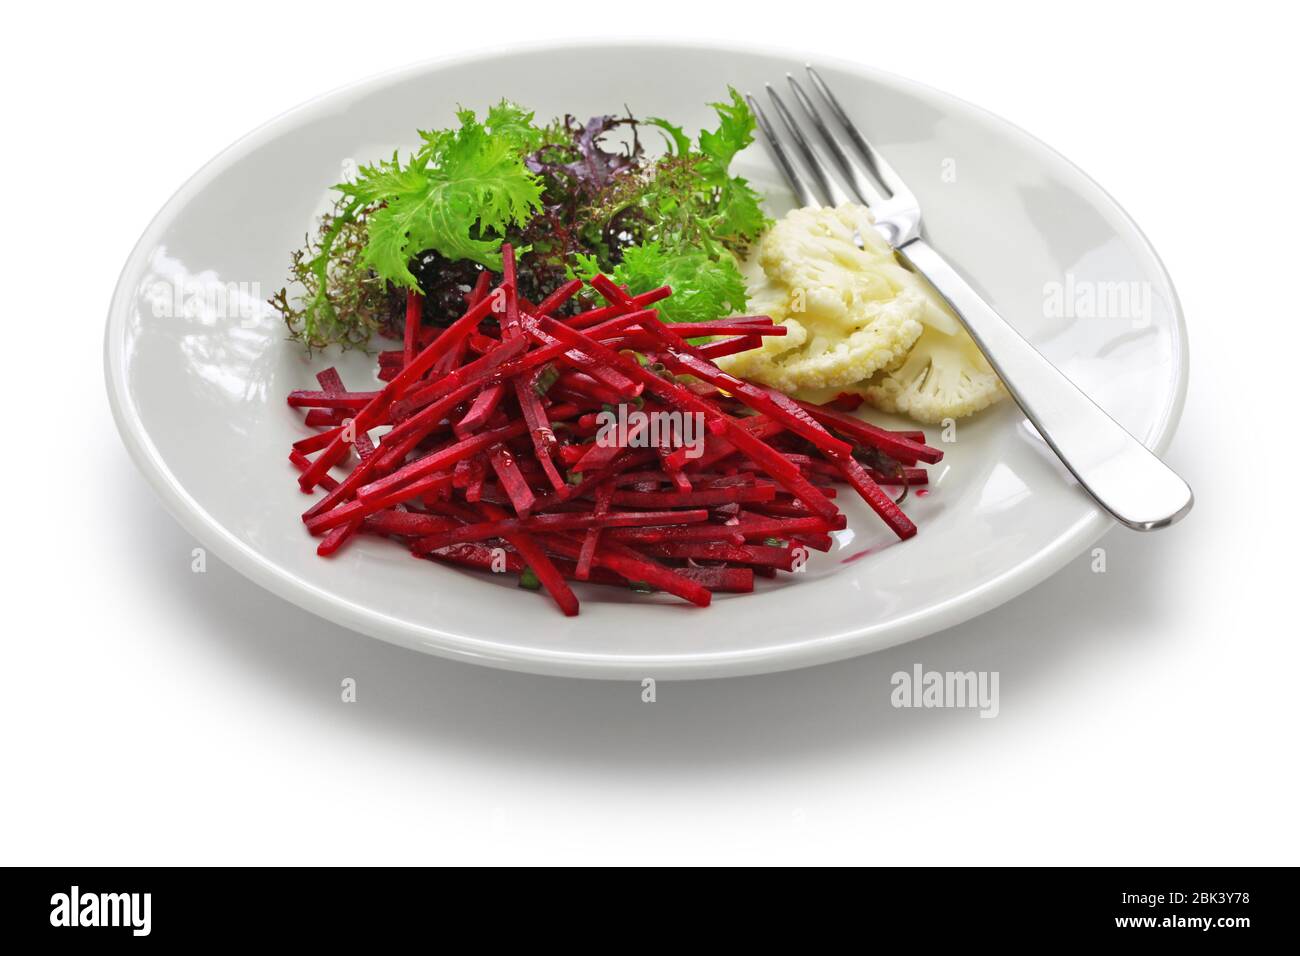 salade de dendroctone de julienne, cuisine végétarienne saine Banque D'Images